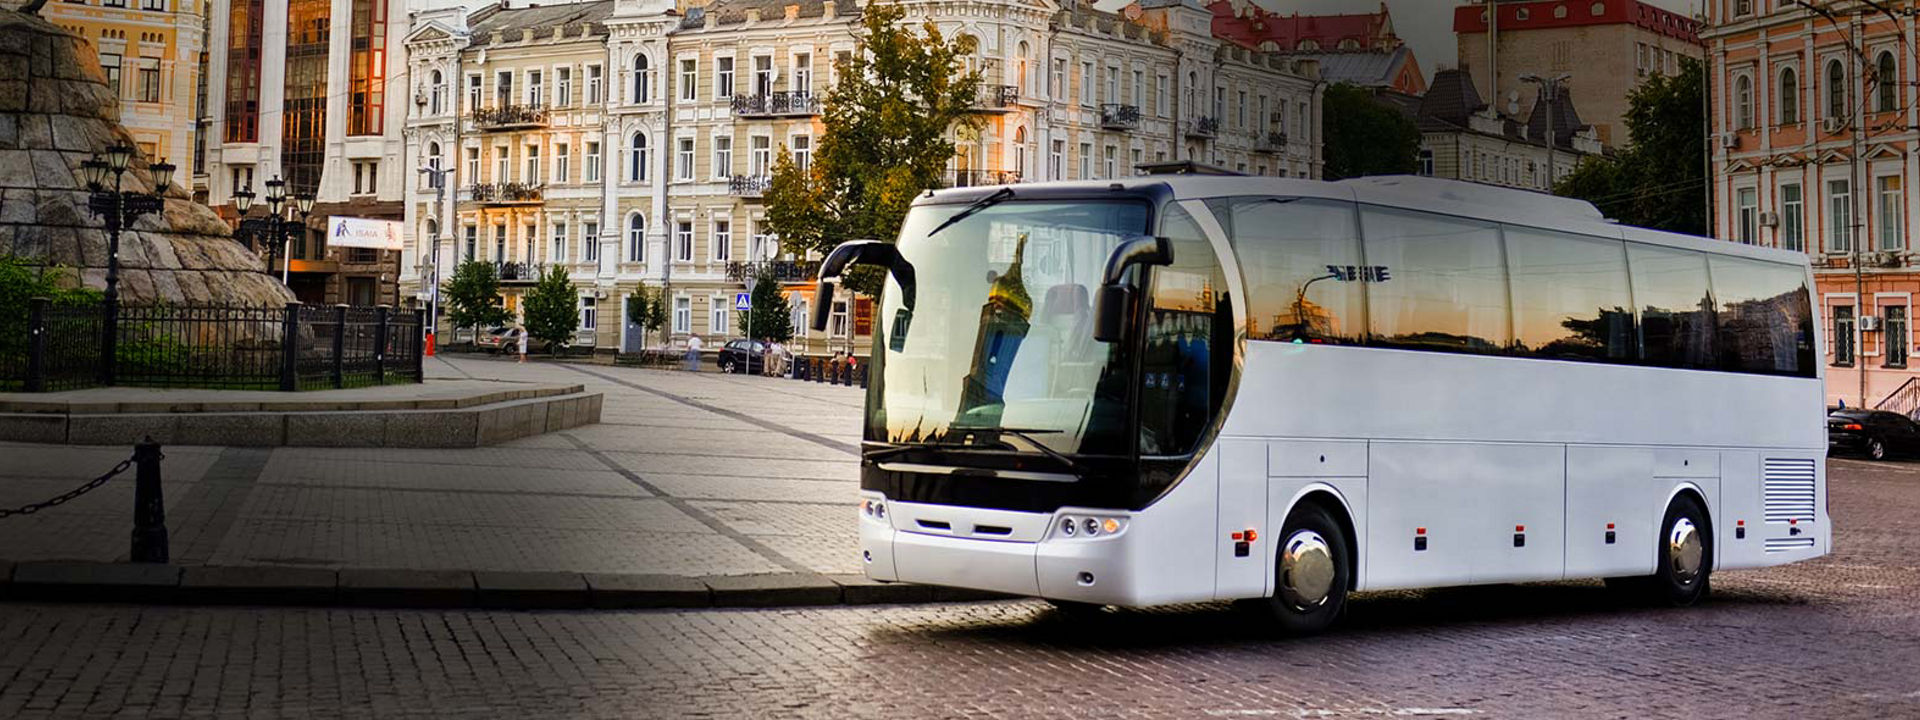 A képen egy távolsági busz látható madártávlatból, amint a Bridgestone távolsági buszokra tervezett abroncsaival halad.